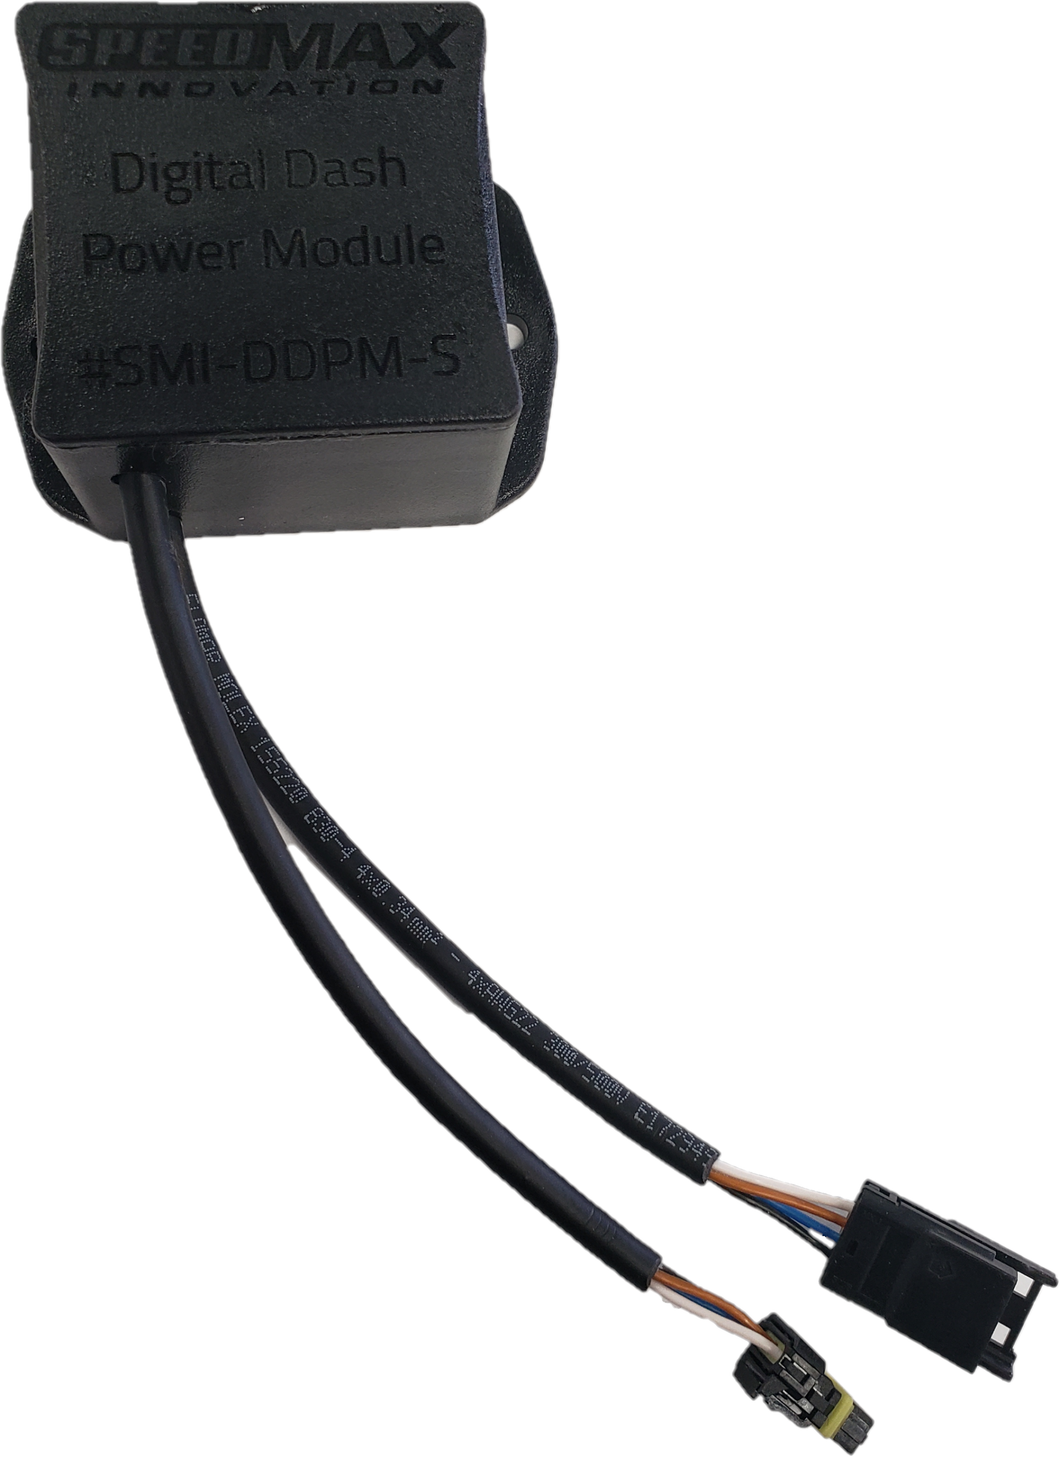 (#SMI-DDPM-S) Digital Dash Power Module - For 3.5